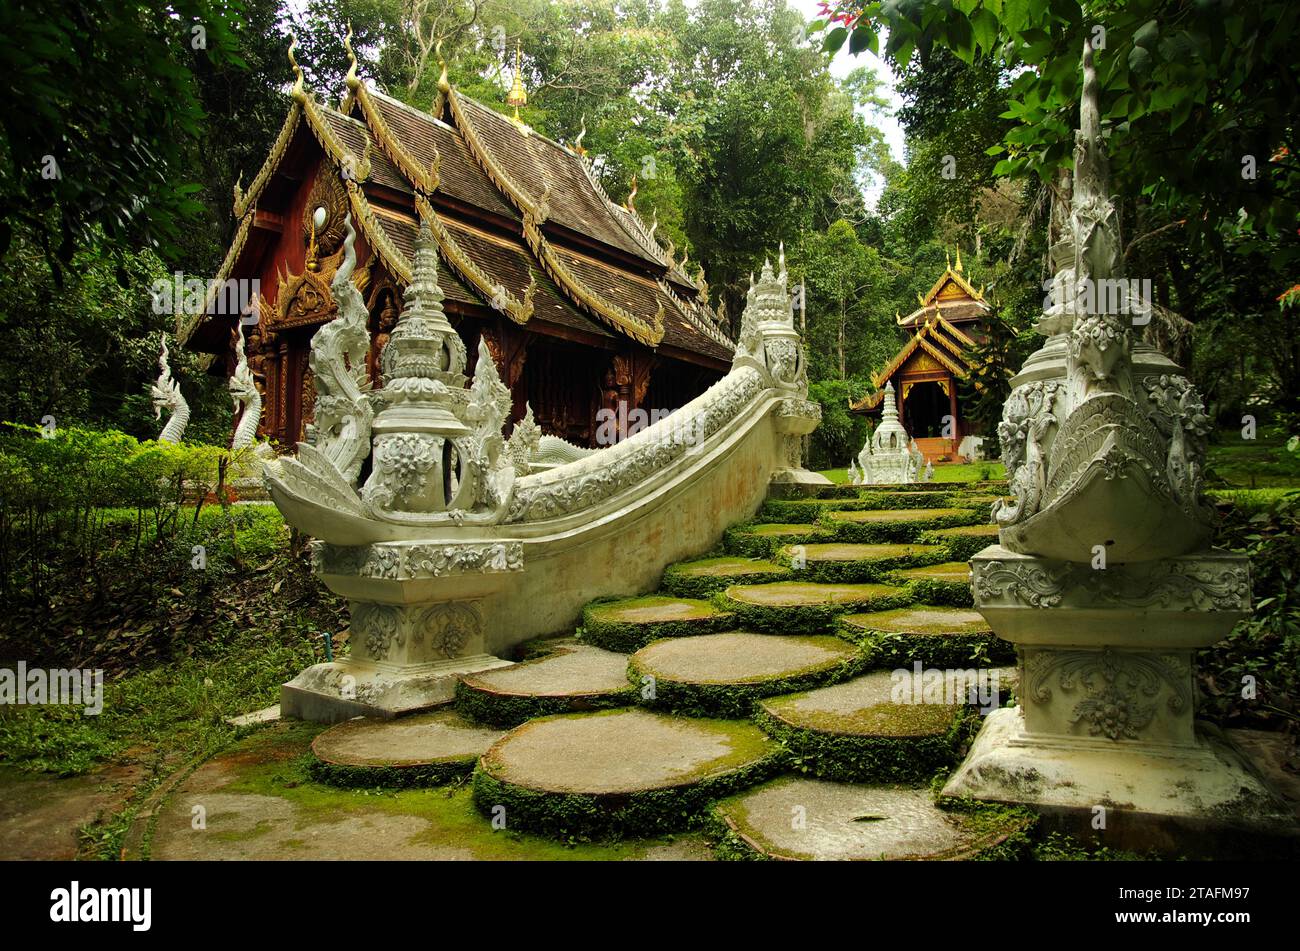 Temple de wat luang khun victoire à Chiang Mai. Un temple du patrimoine dans la forêt tropicale luxuriante. Banque D'Images